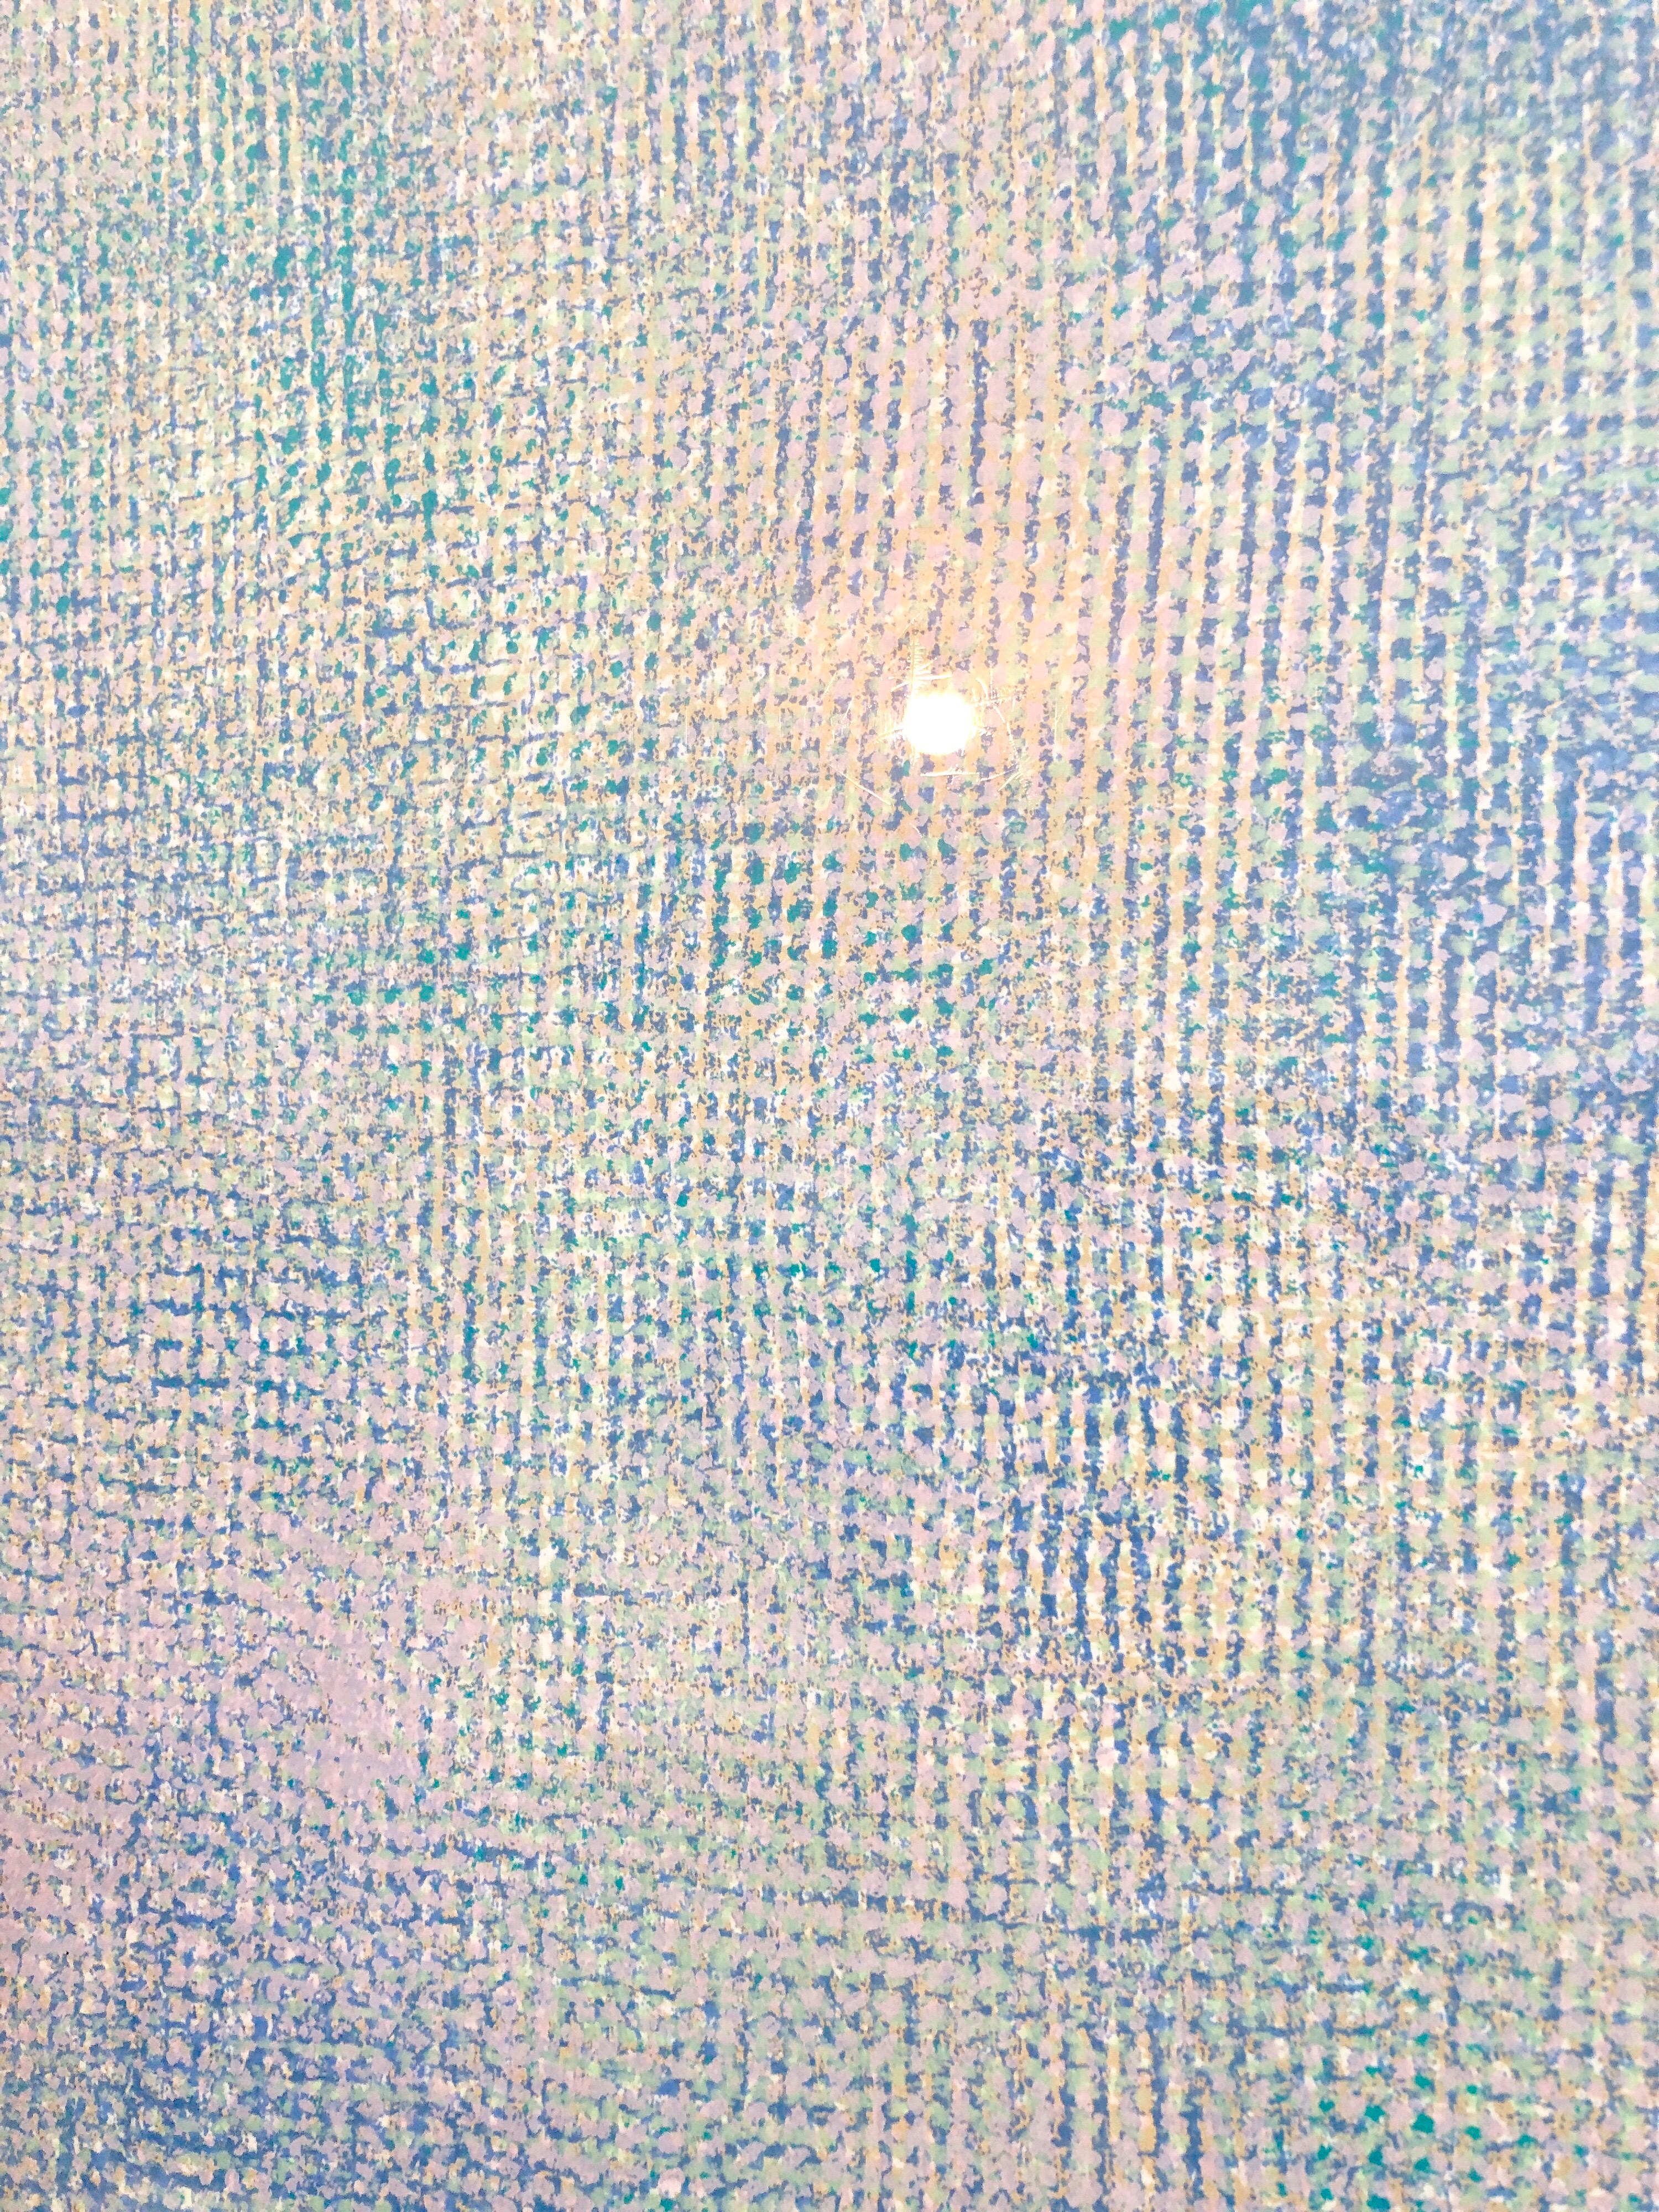 Huge 6ft Natkin Abstract Expressionist, Blue Silkscreen Screenprint Lithograph 3